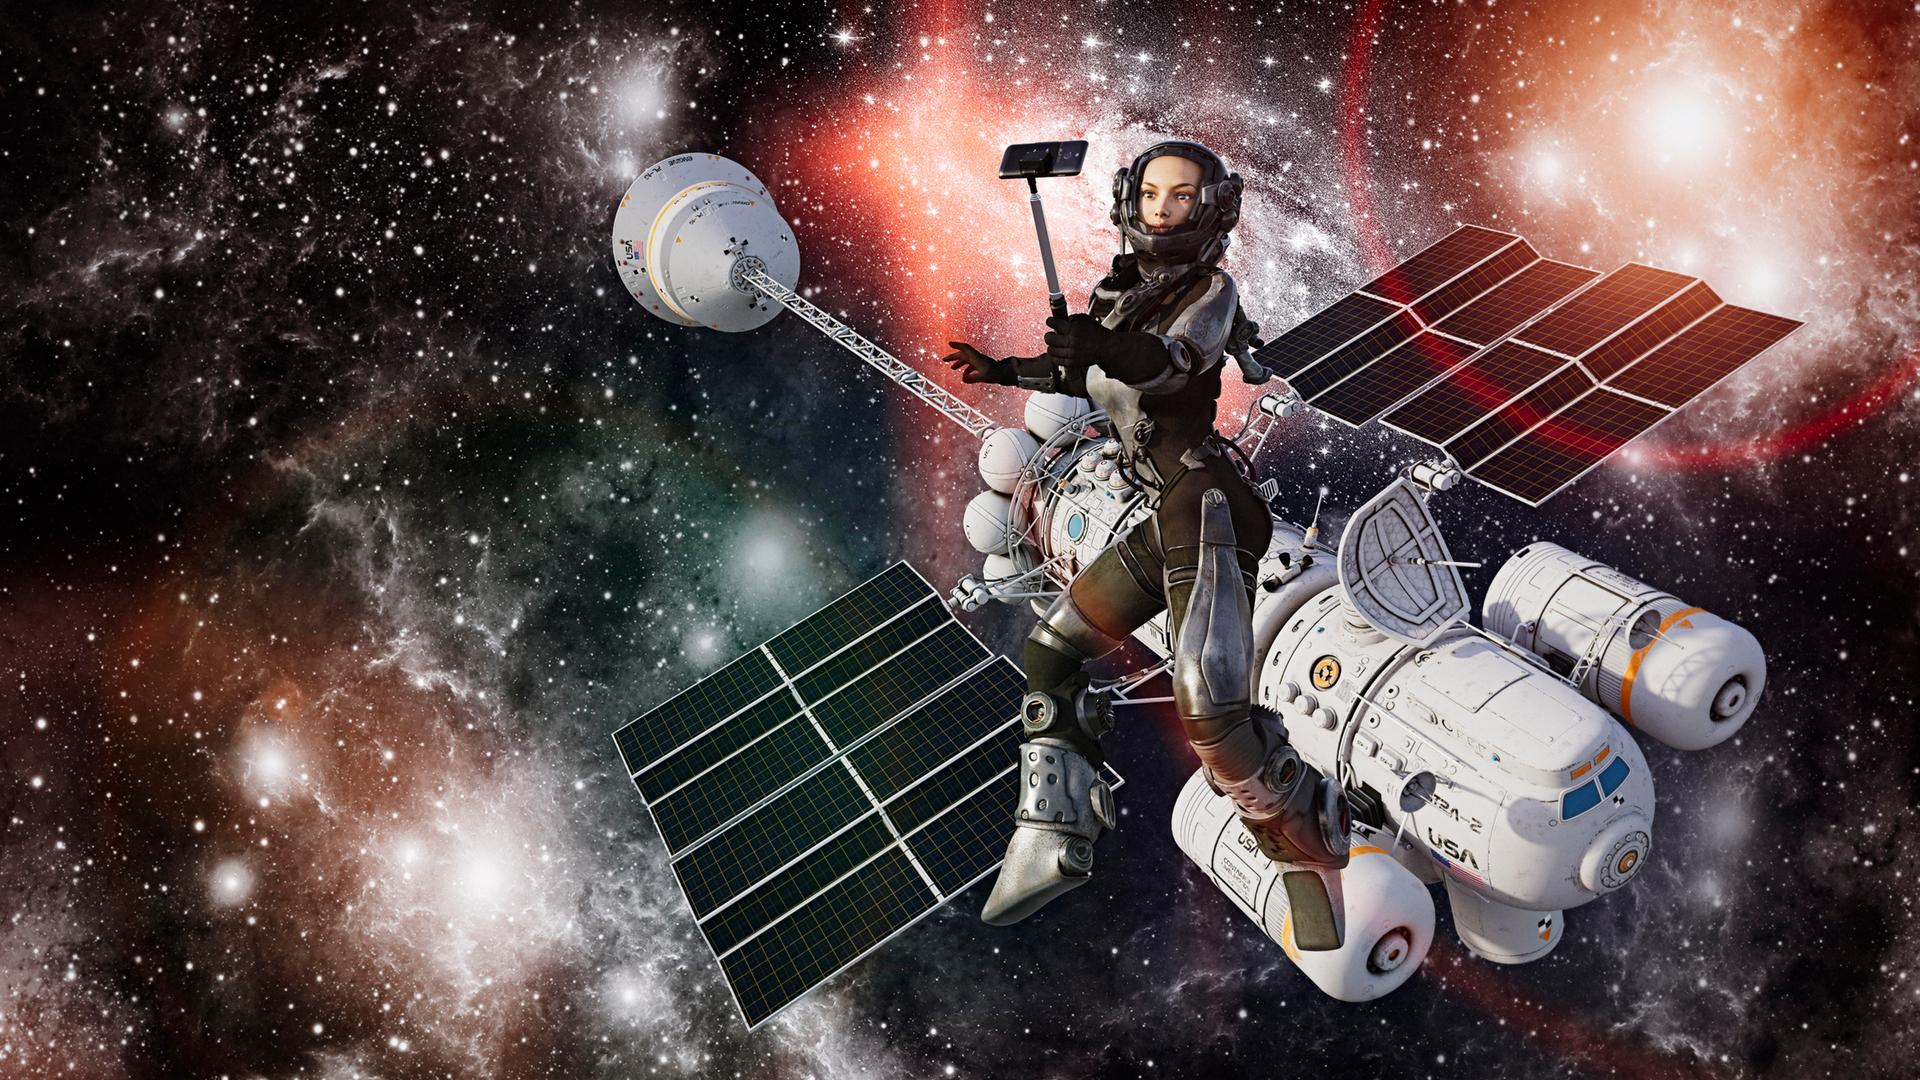 Astronautin posiert für ein Handy-Selfie während eines Weltraumspaziergangs